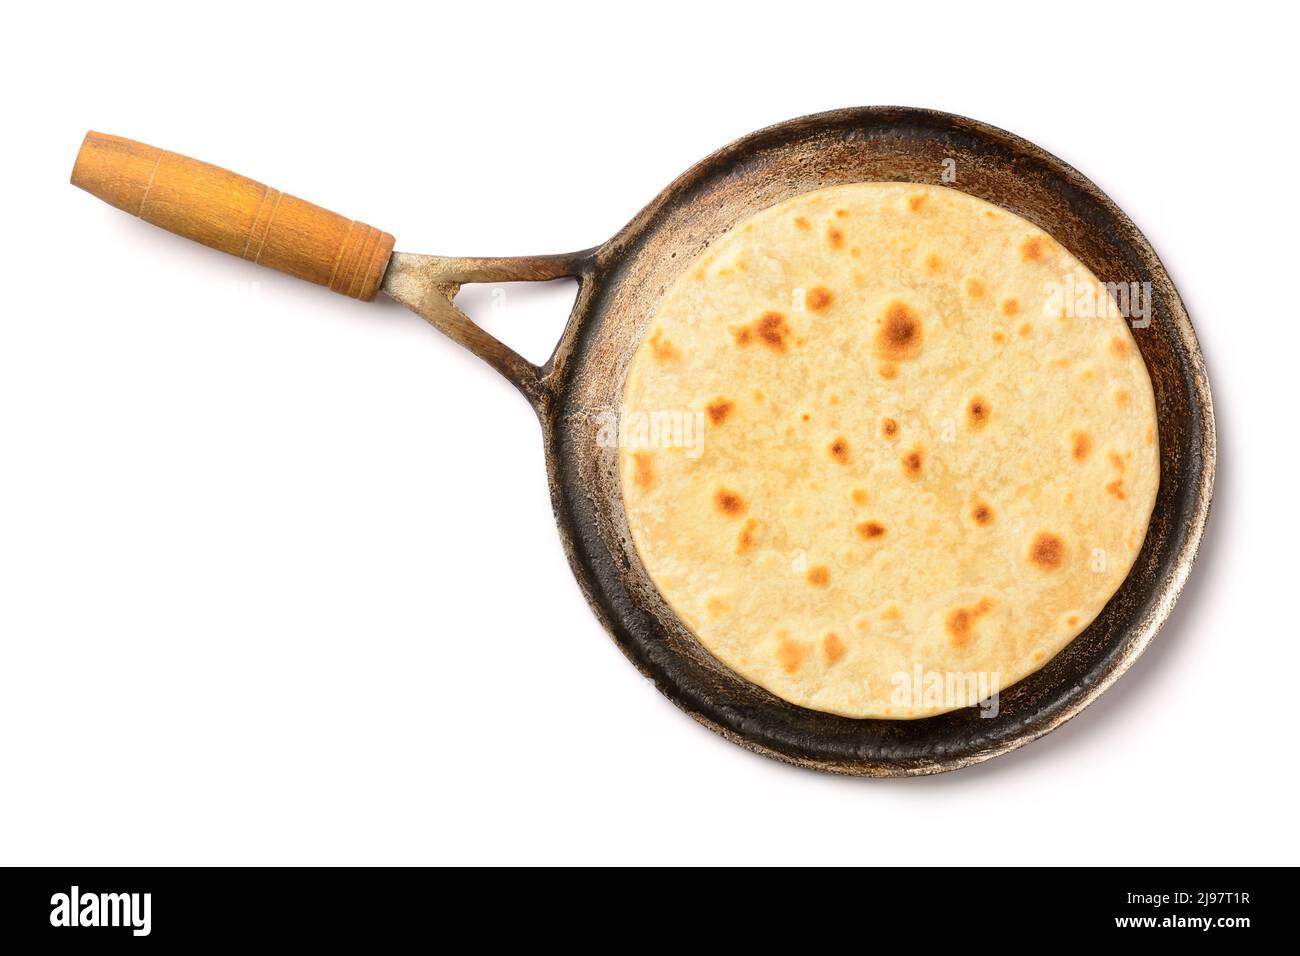 roti, auch als Chapati oder indisches Brot bekannt, eine Art flaches, raues südasiatisches Brot auf einer Roti-Pfanne, frisch gebackenes indisches Fladenbrot, isoliert auf Weiß Stockfoto